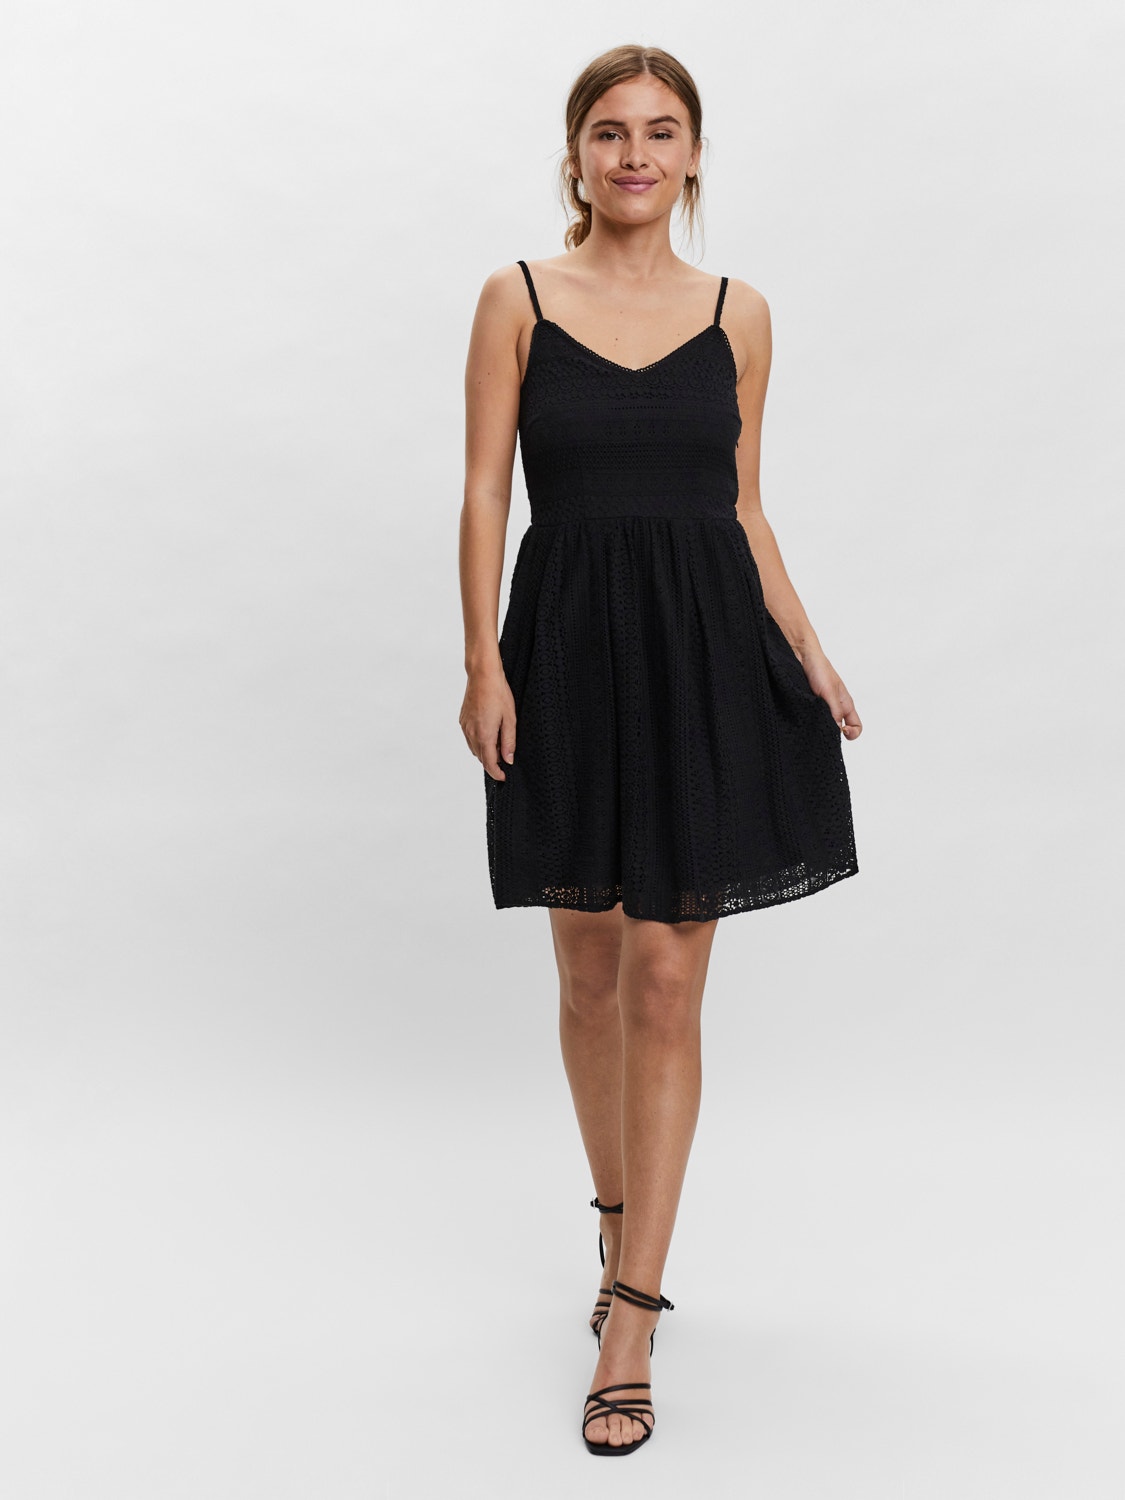 Vero Moda VMHONEY Short dress -Black - 10220925